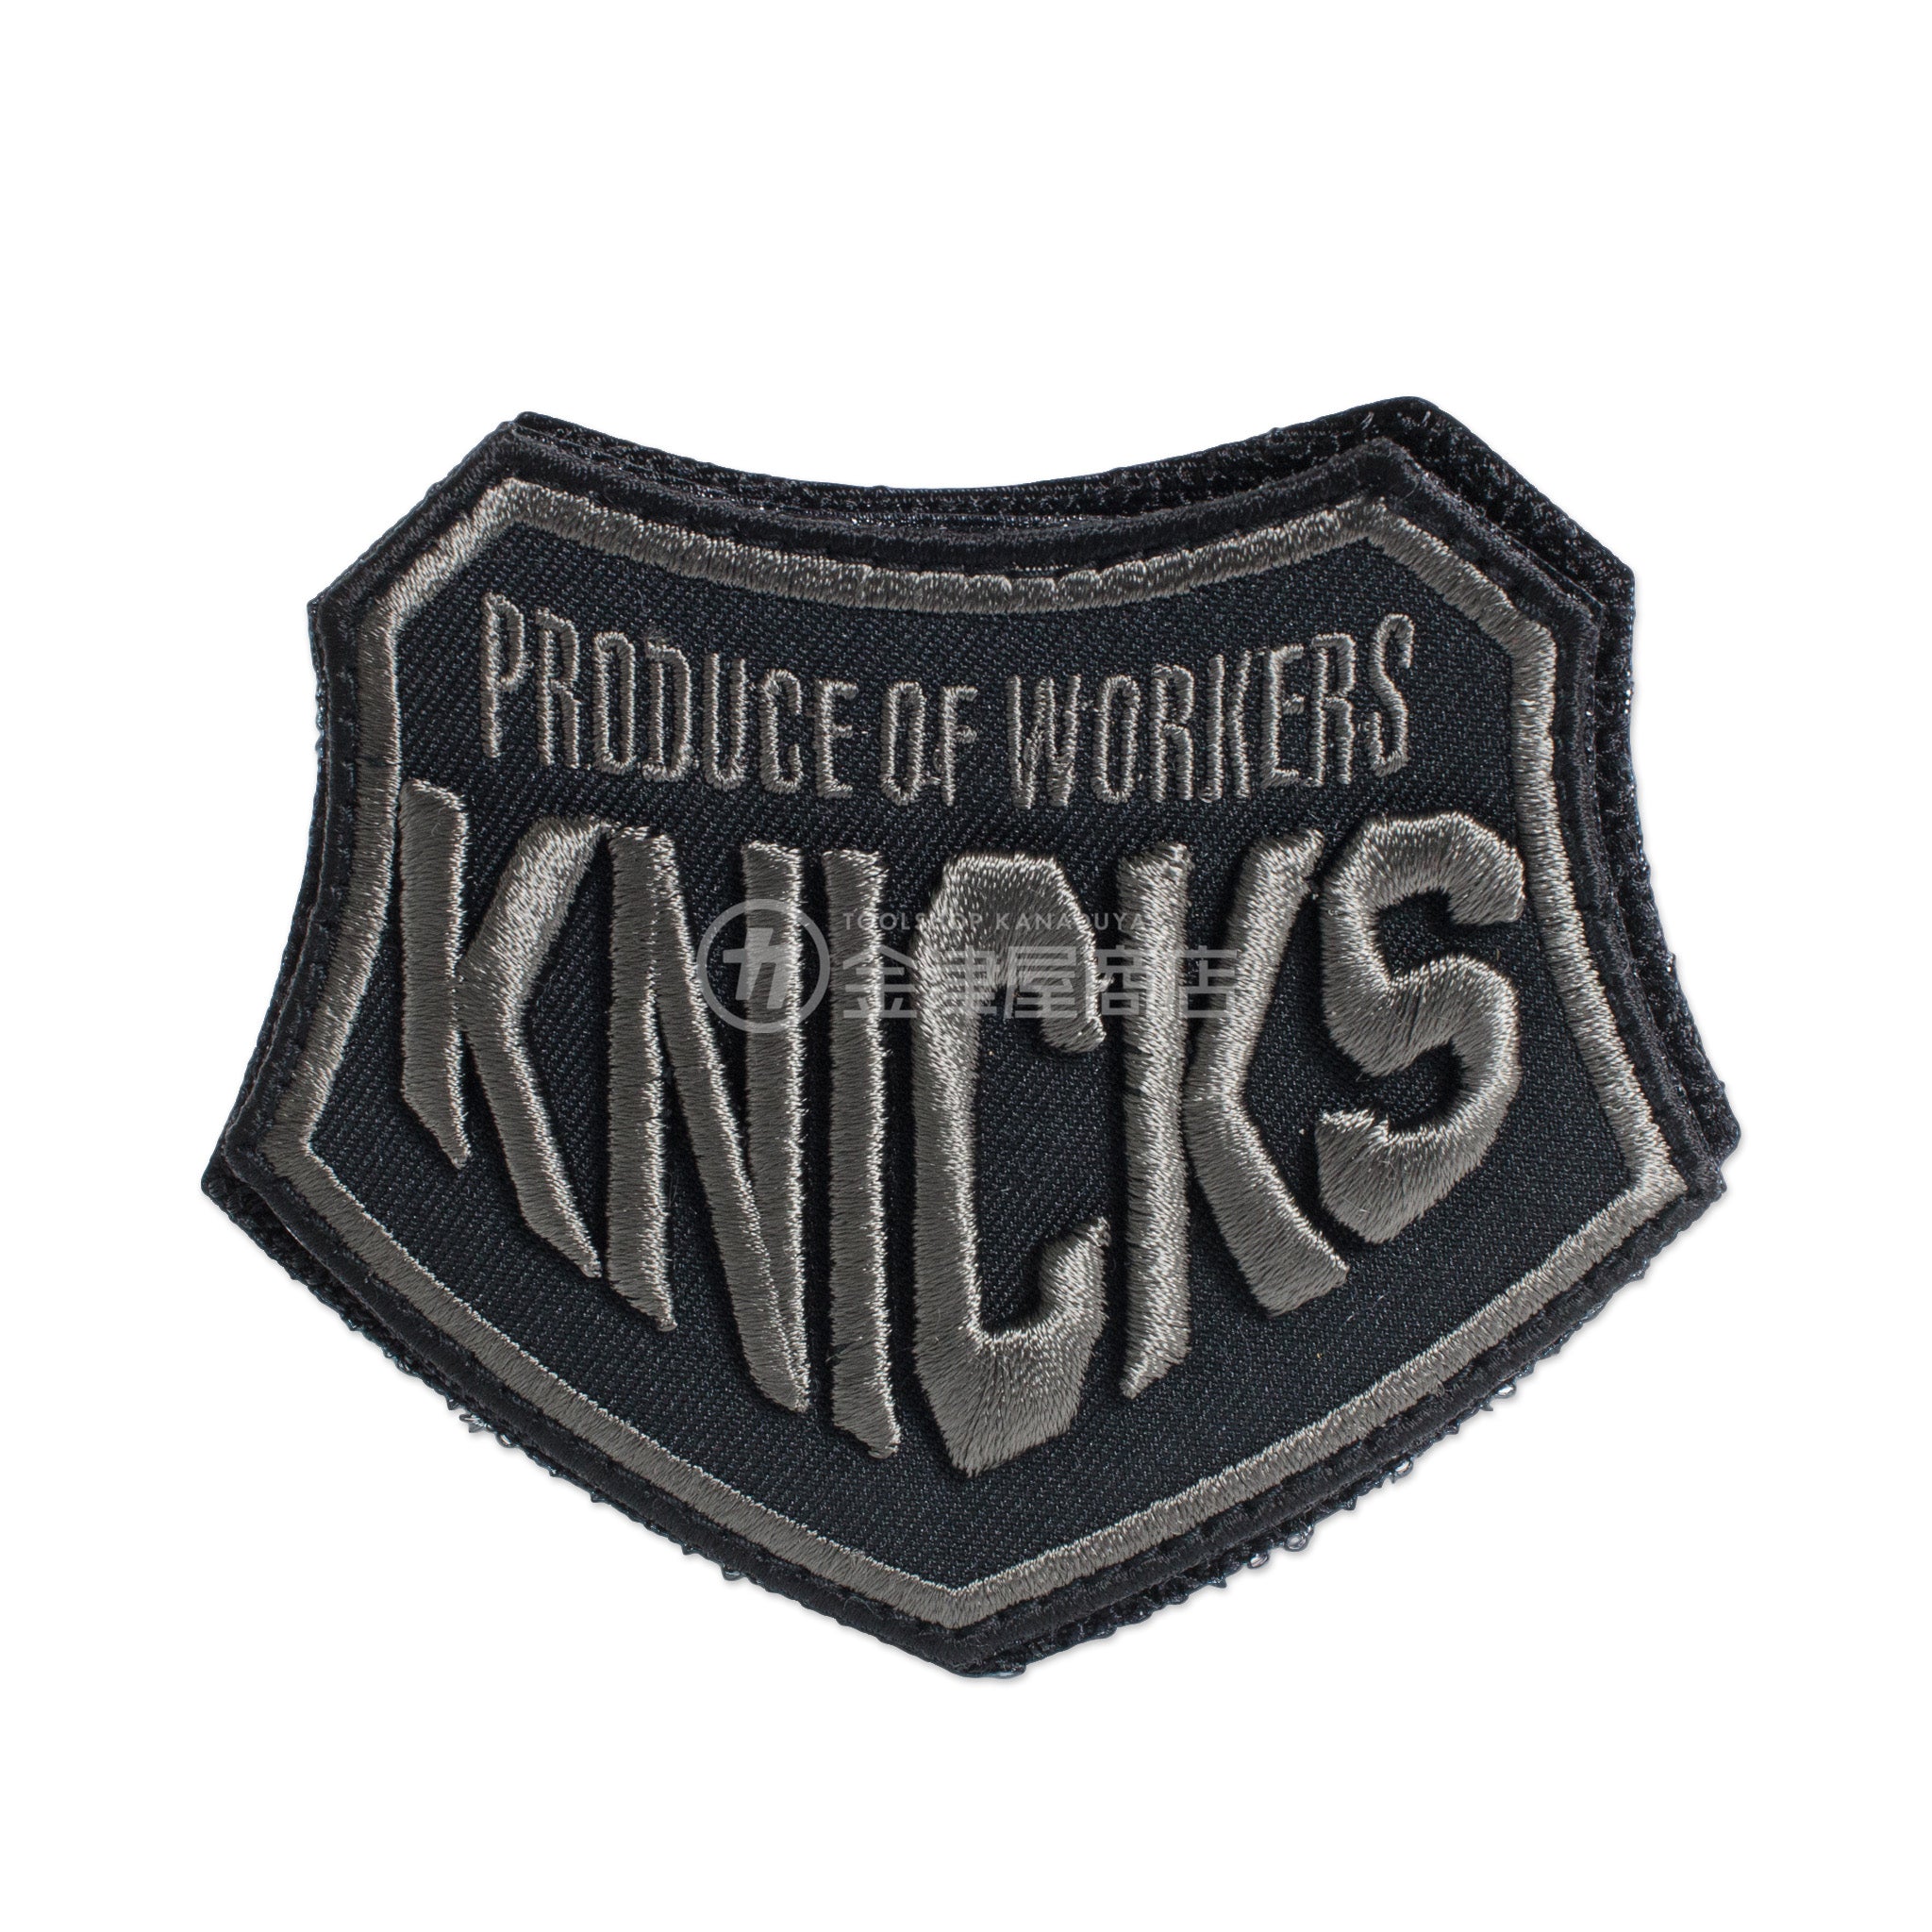 ニックス(KNICKS) PRODUCE OF WORKERS 3D刺繍 ベルクロワッペン W-3D